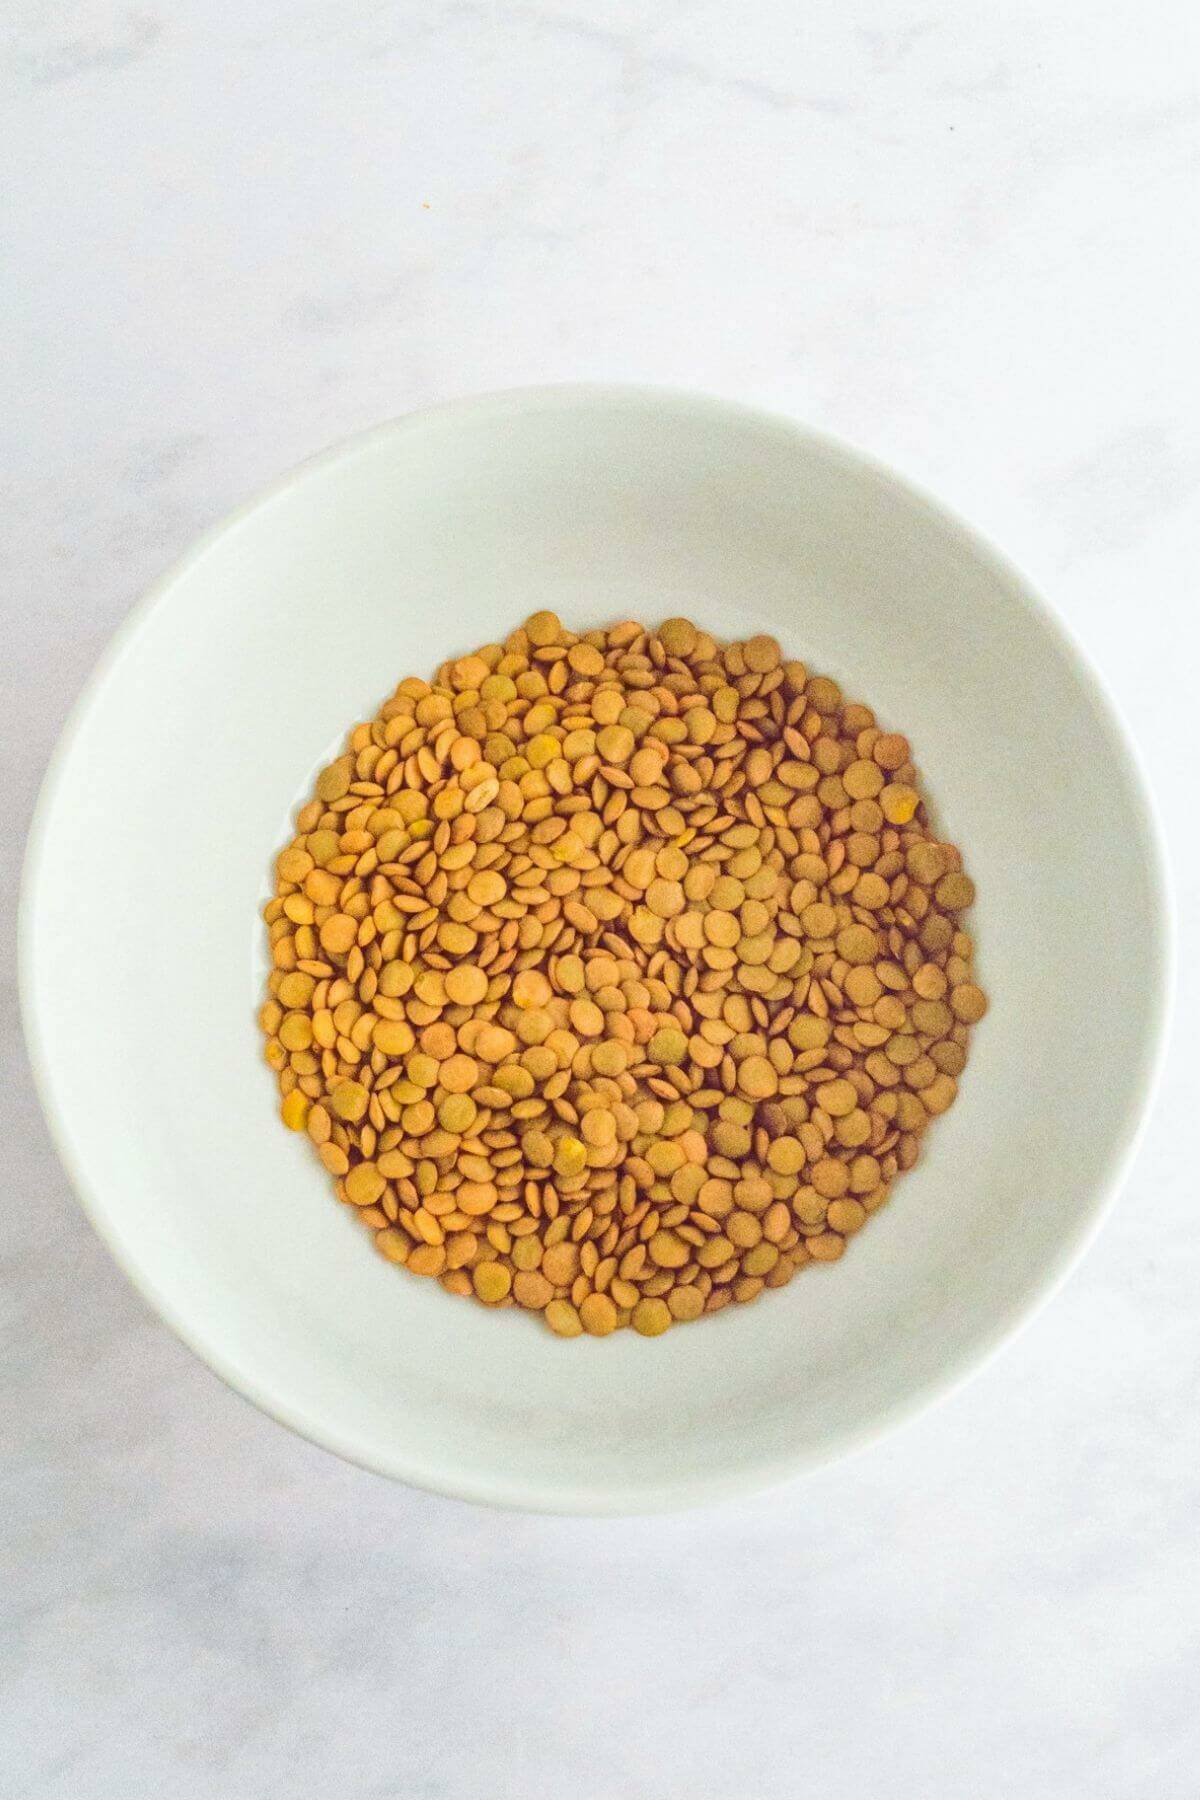 Dried lentils.